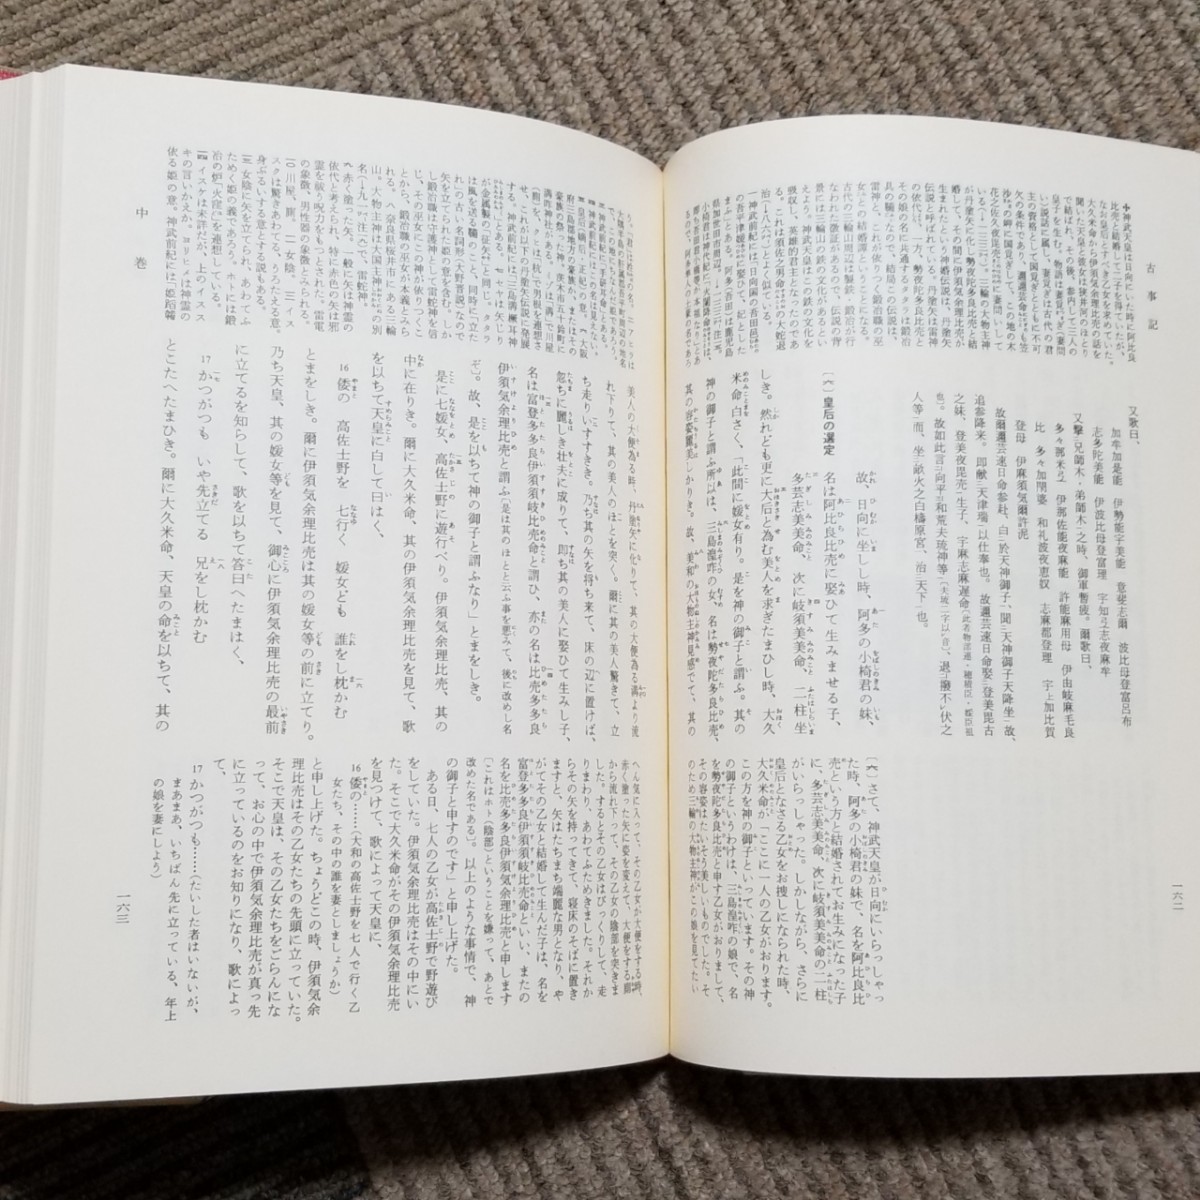 日本古典文学全集 全51巻 小学館